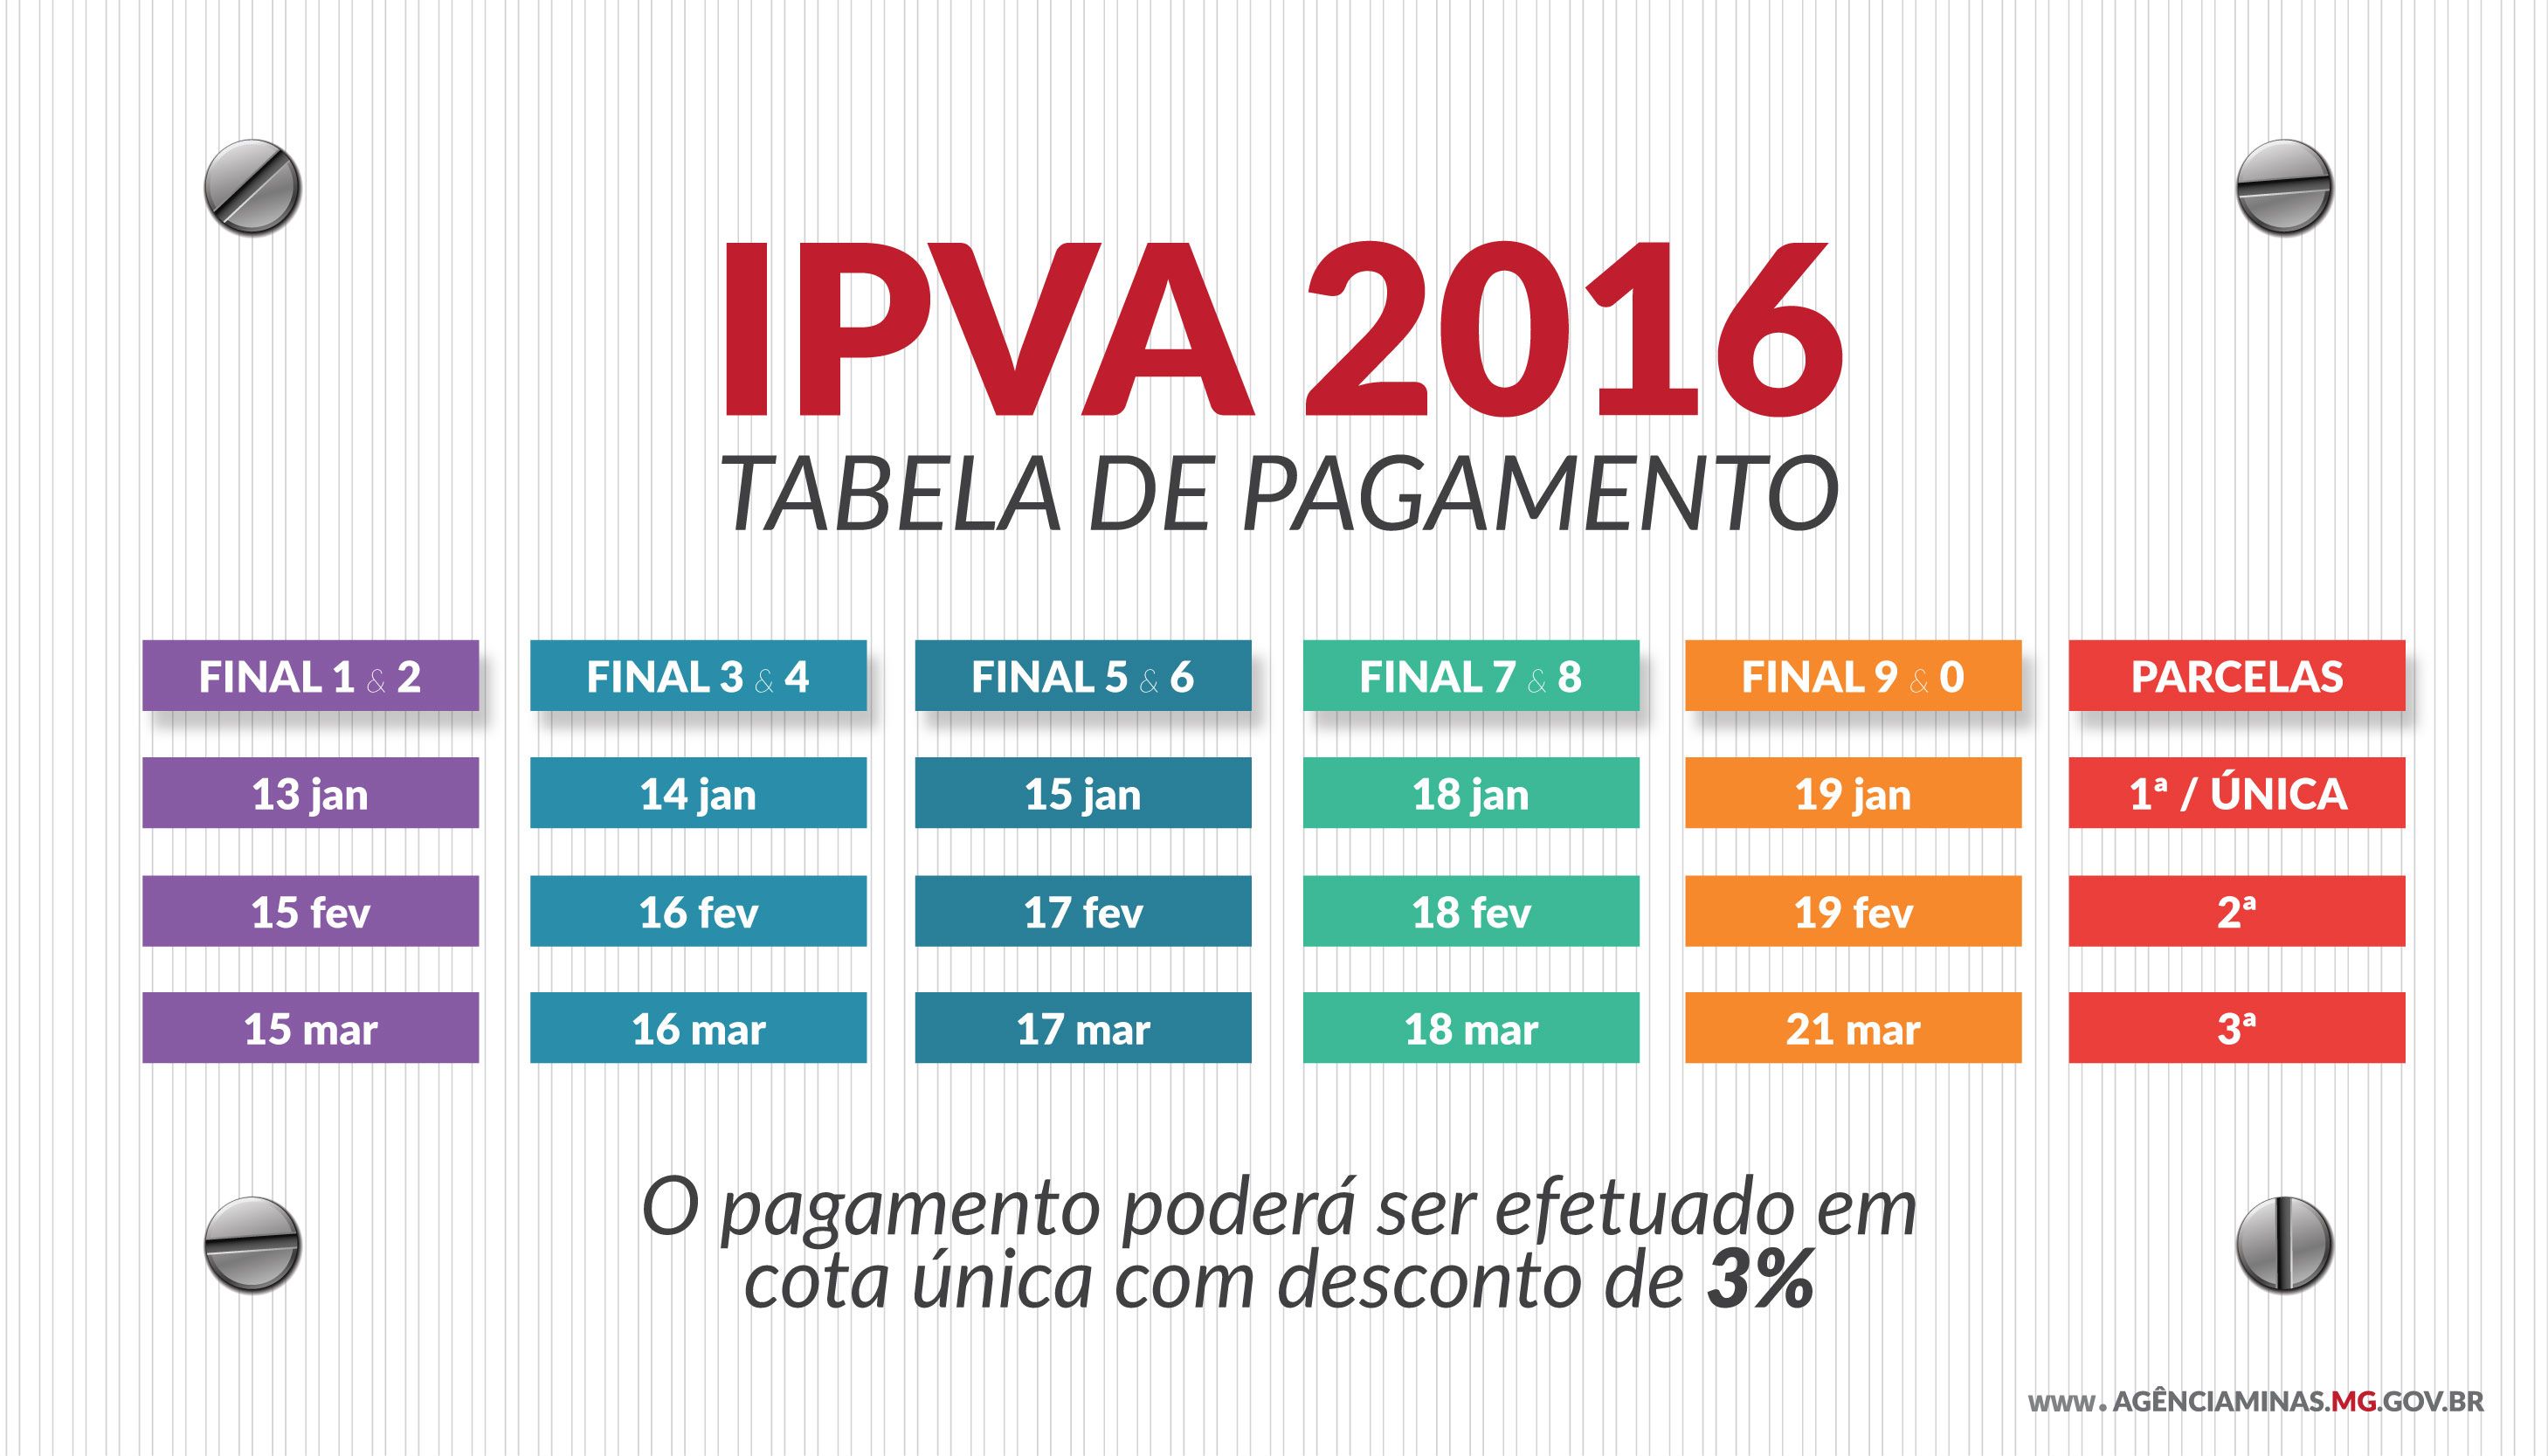 Vence IPVA para veículos de placa final 7 e 8 Notícias Minas Gerais